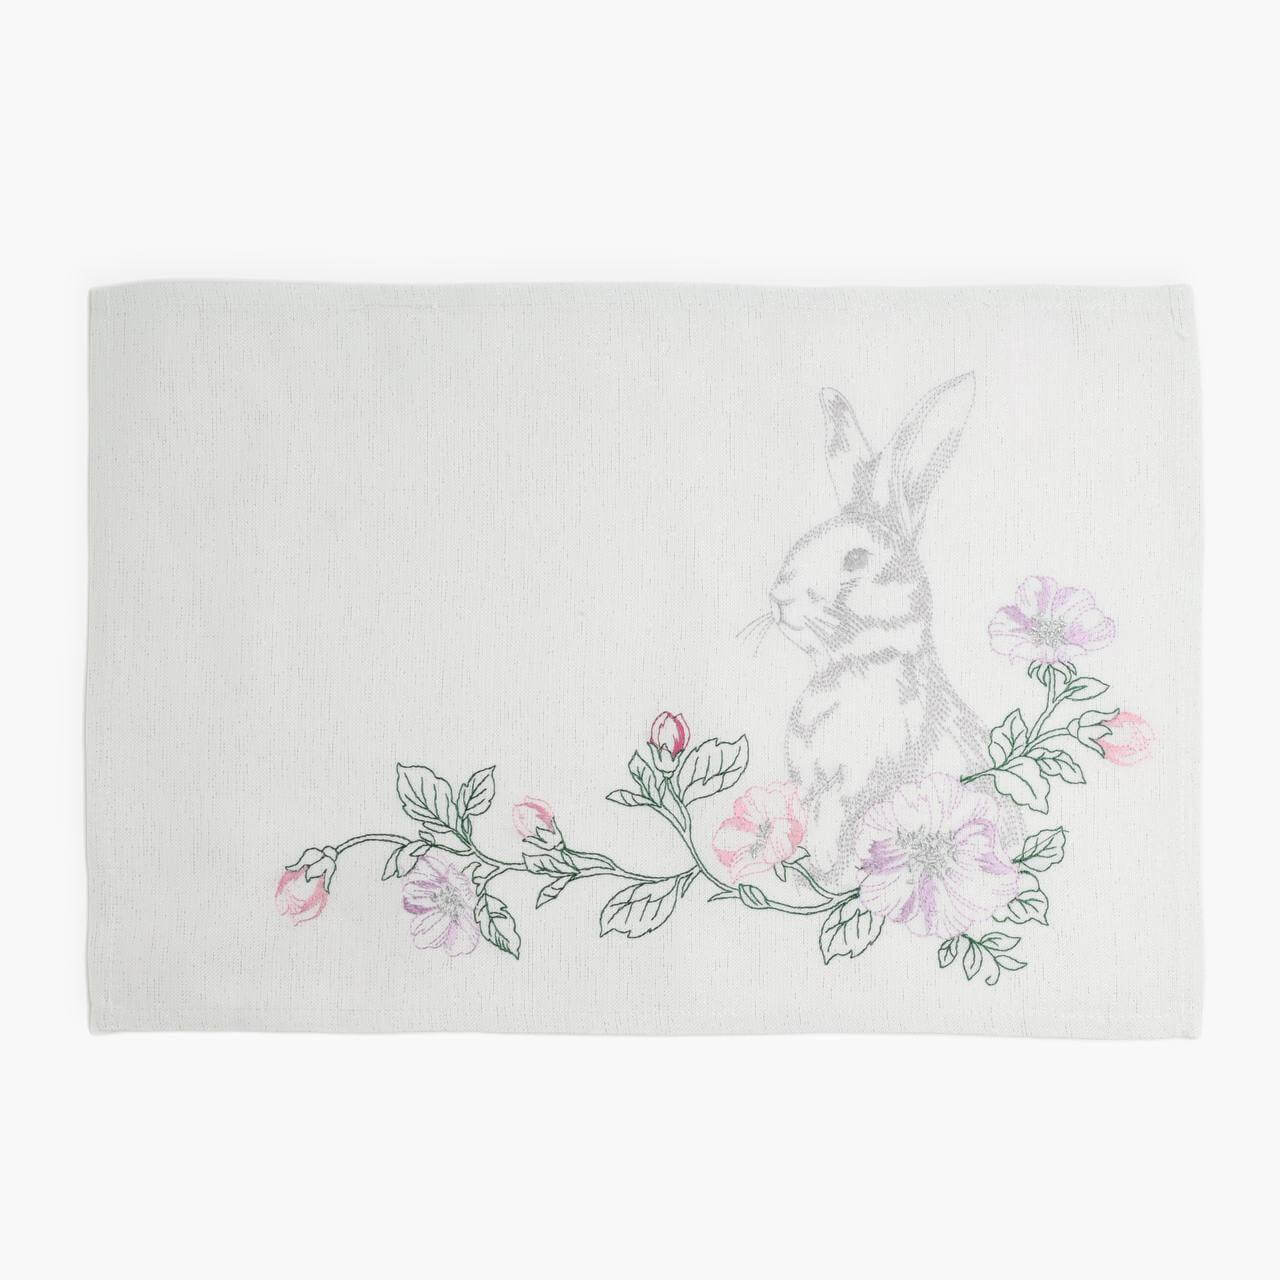 Салфетка под приборы, 30x45 см, полиэстер, прямоугольная, белая, Кролик в цветах, Pure Easter изображение № 1